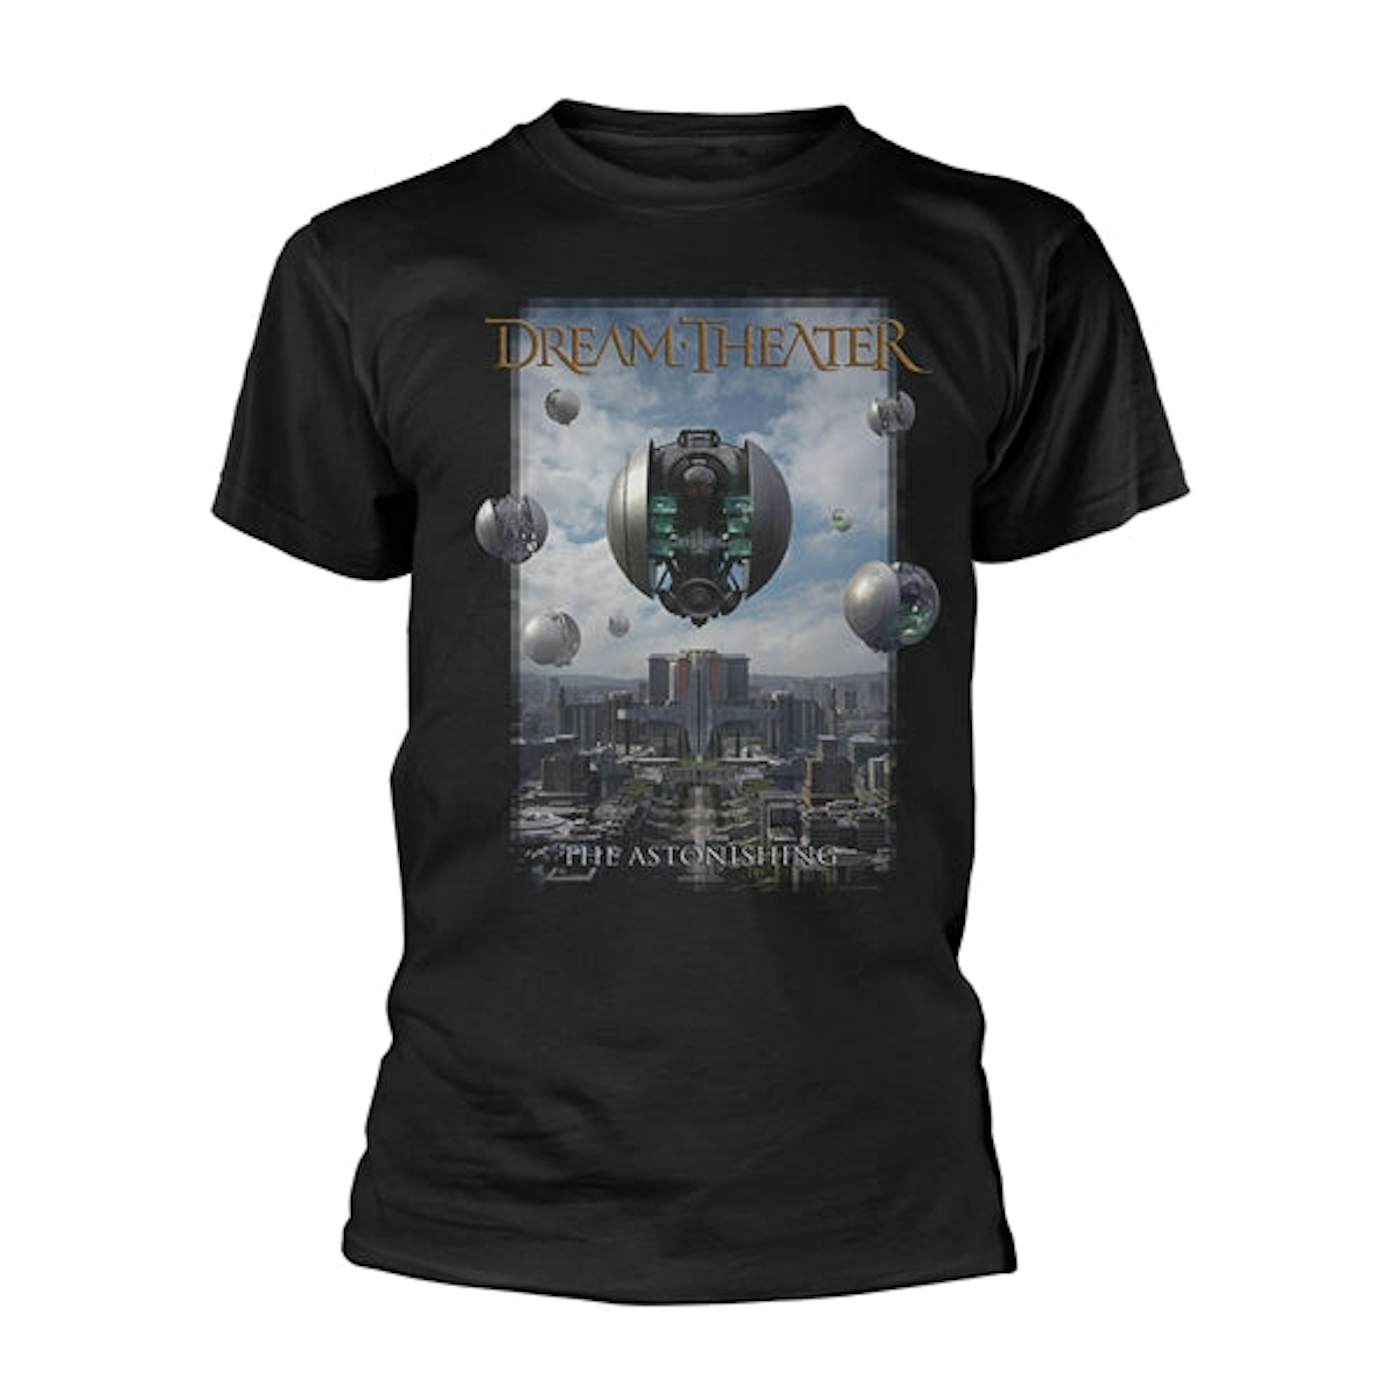 Dream Theater T Shirt - The Astonishing